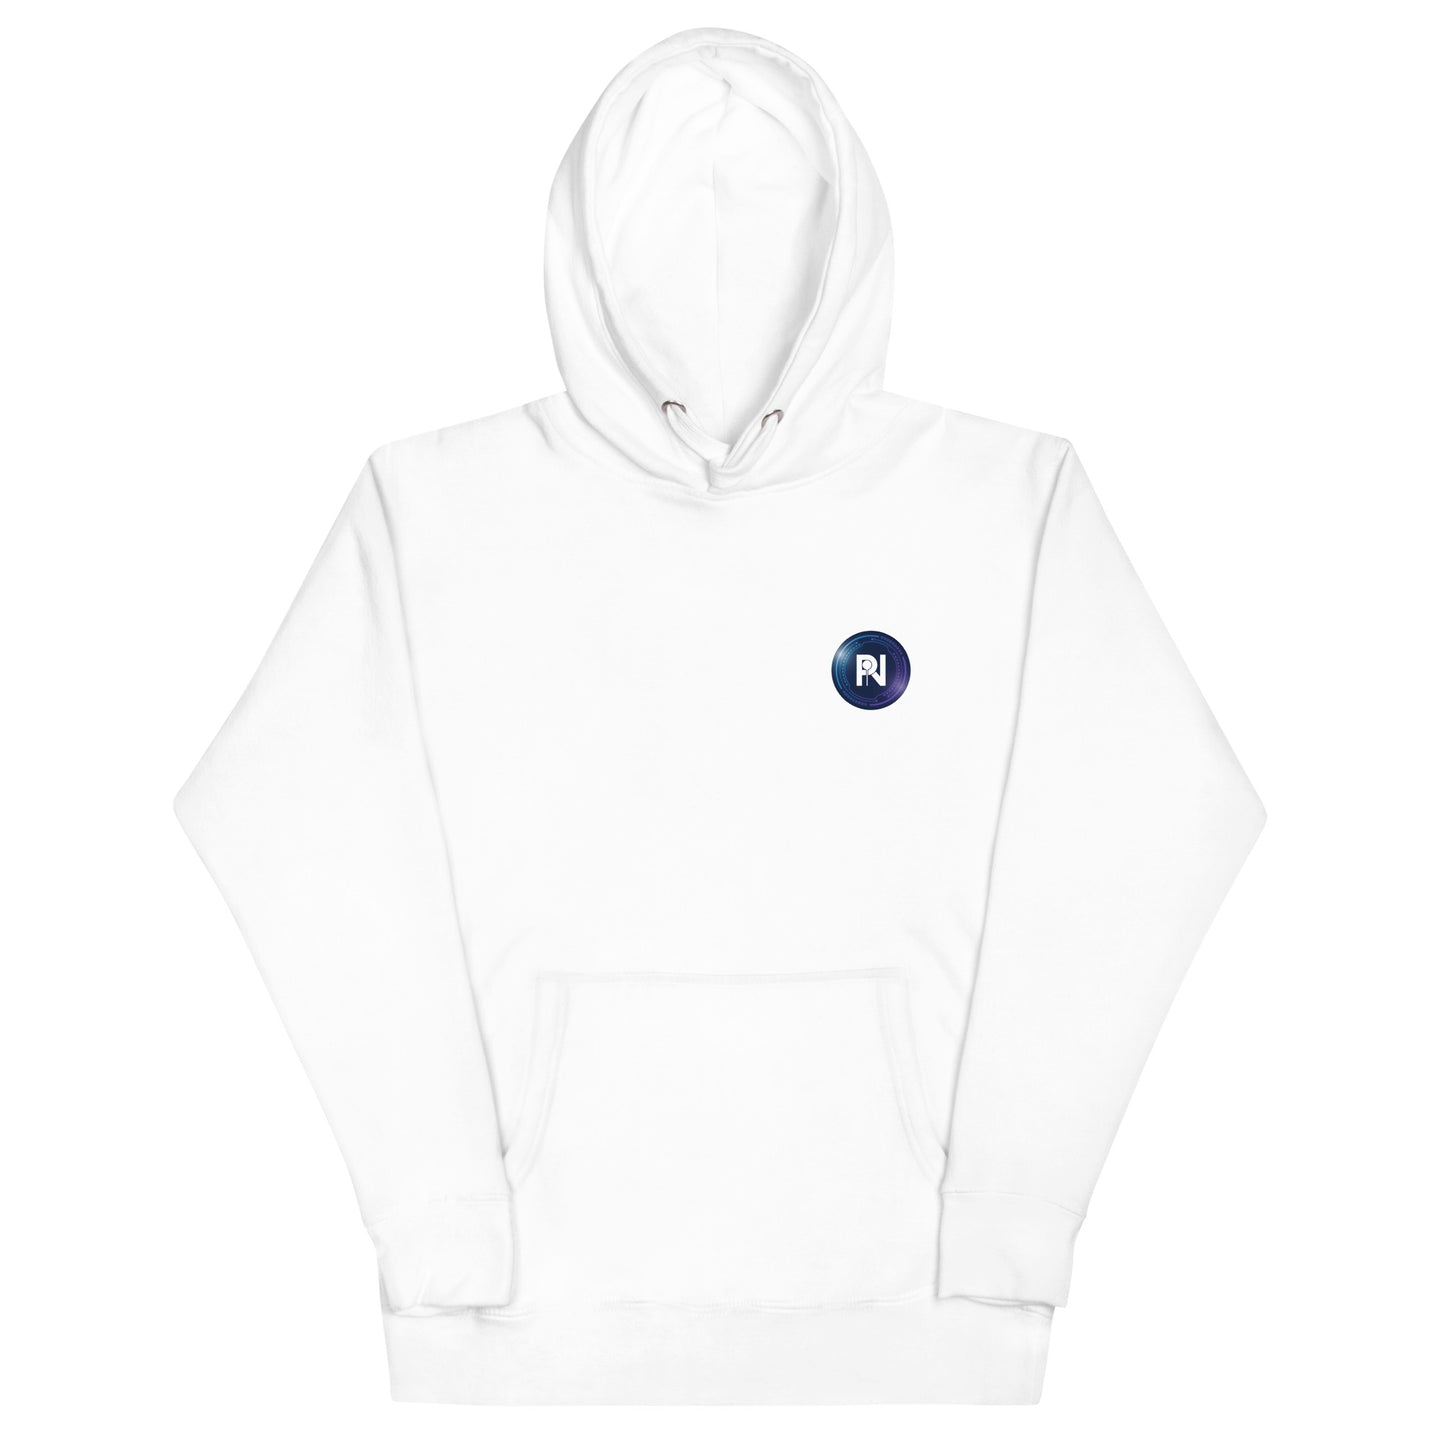 Unisex company logo hoodie